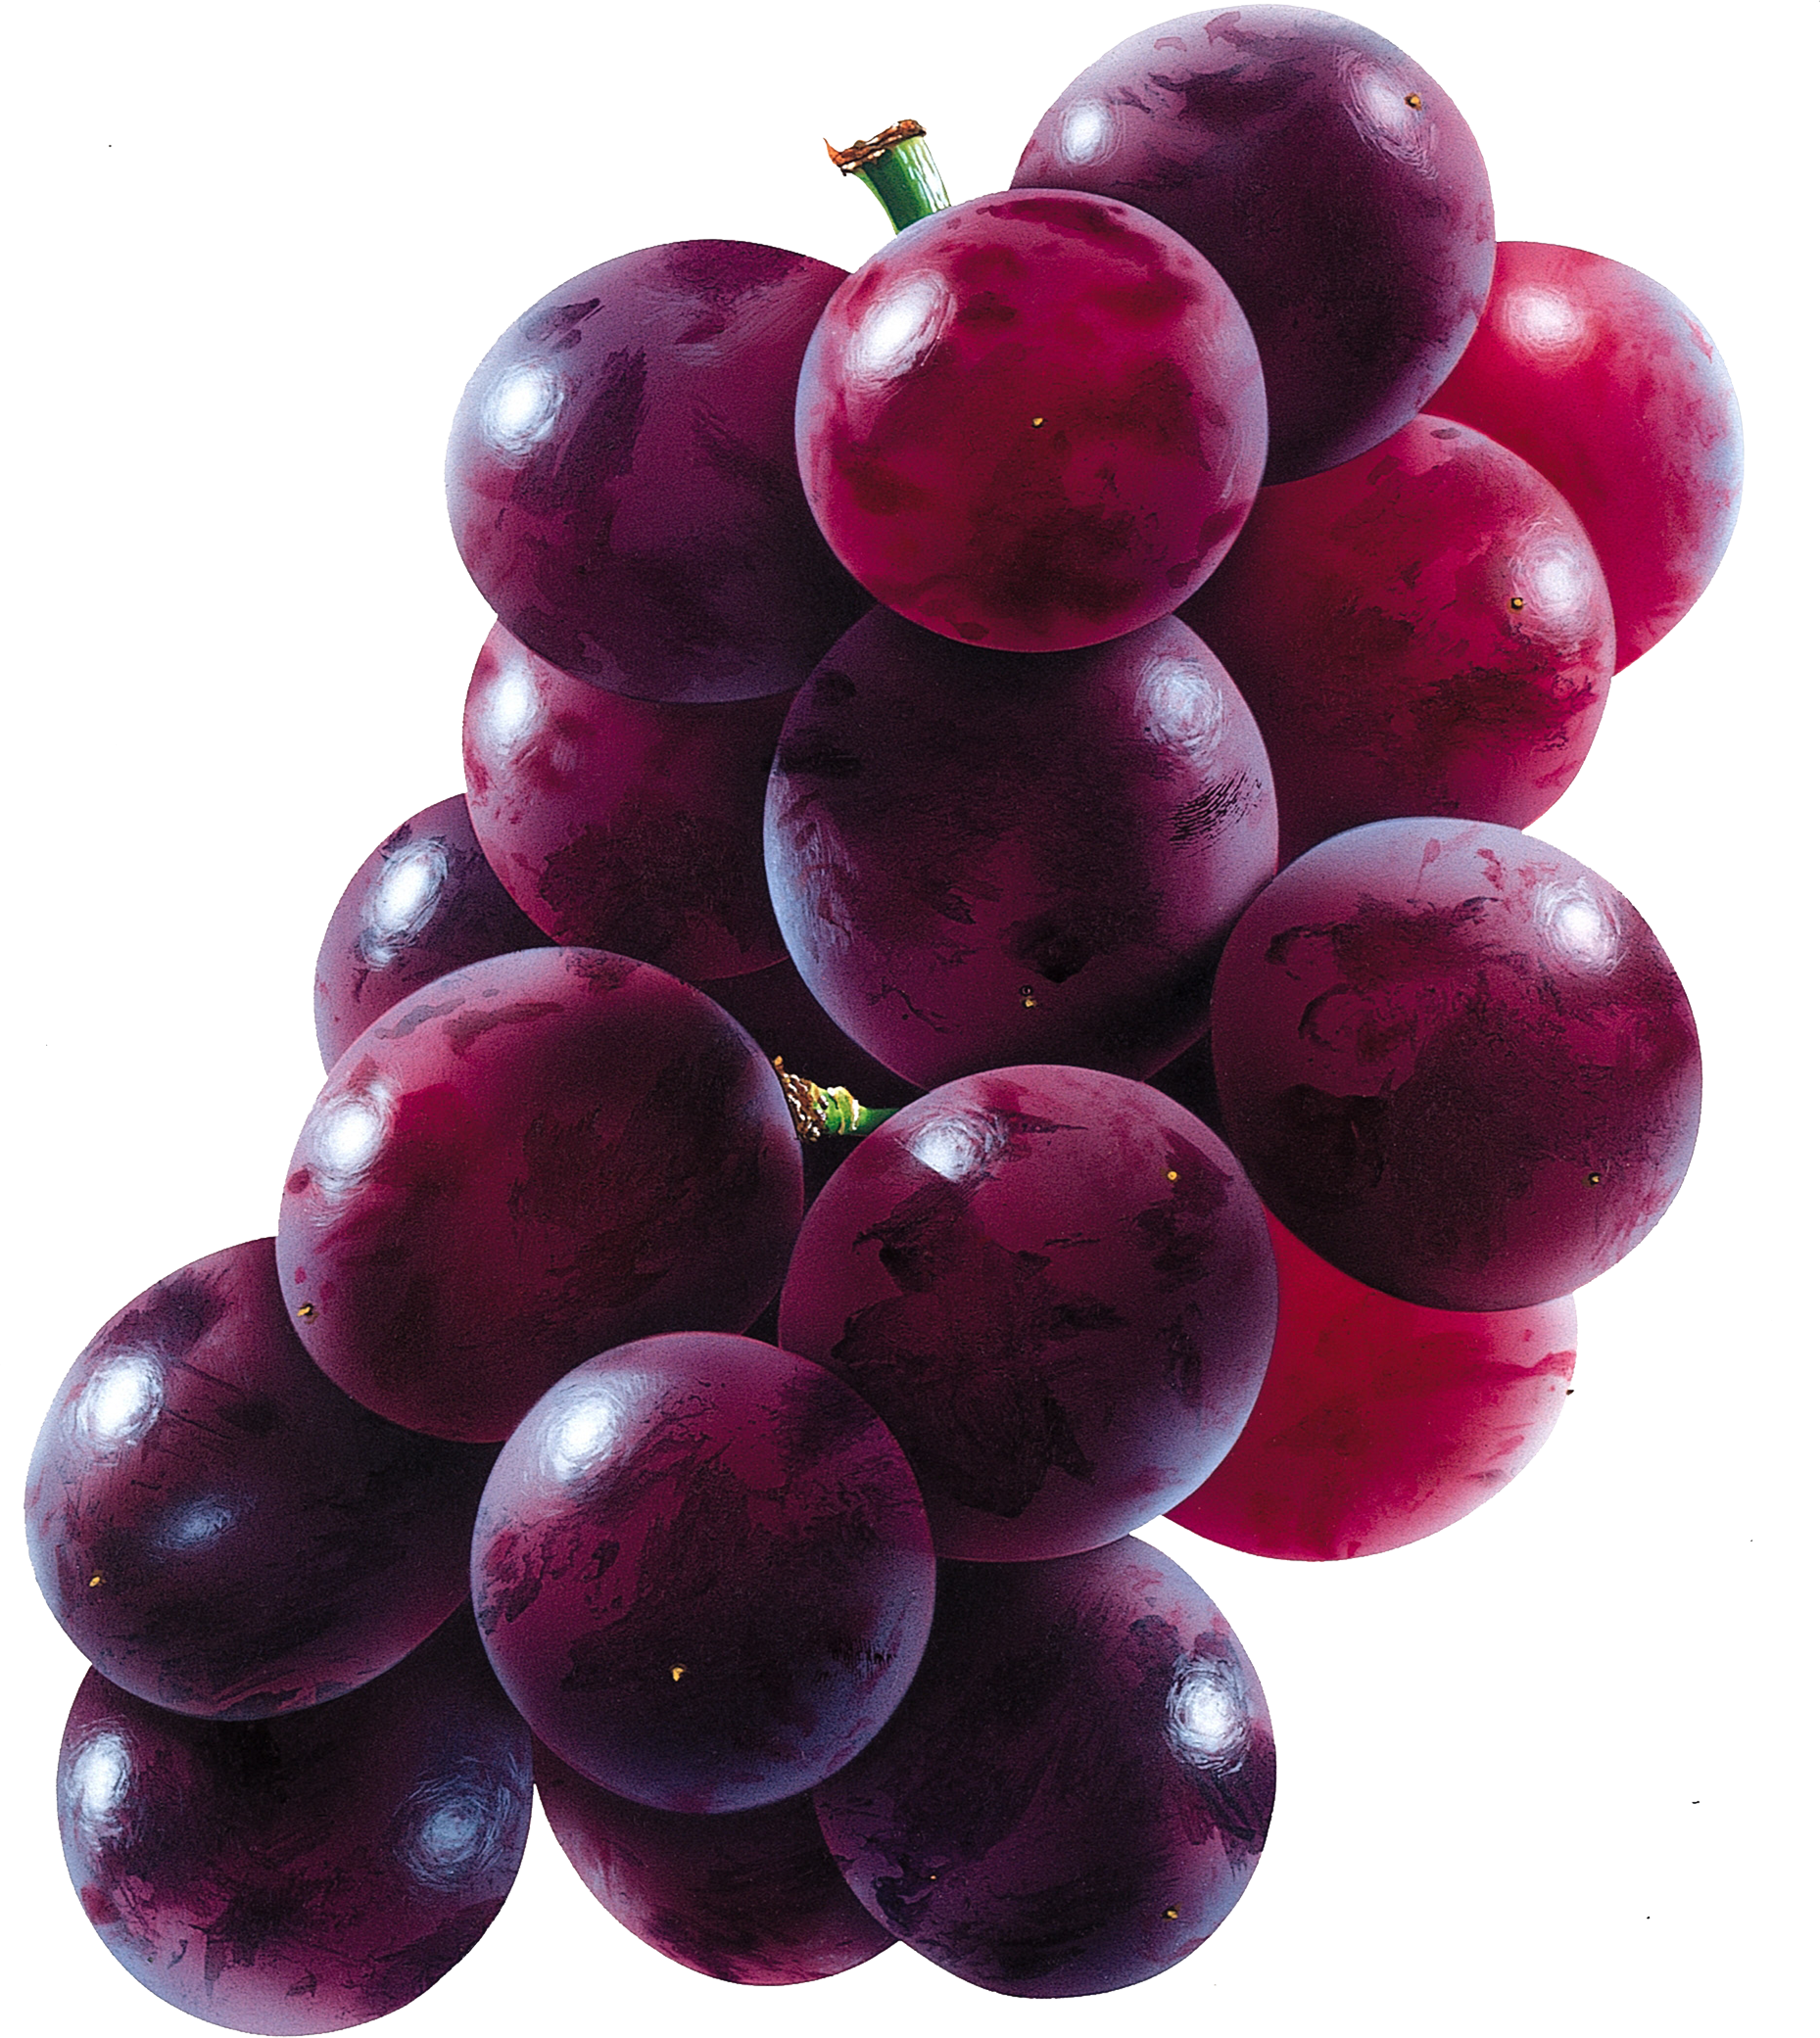 food · fruits · grapes